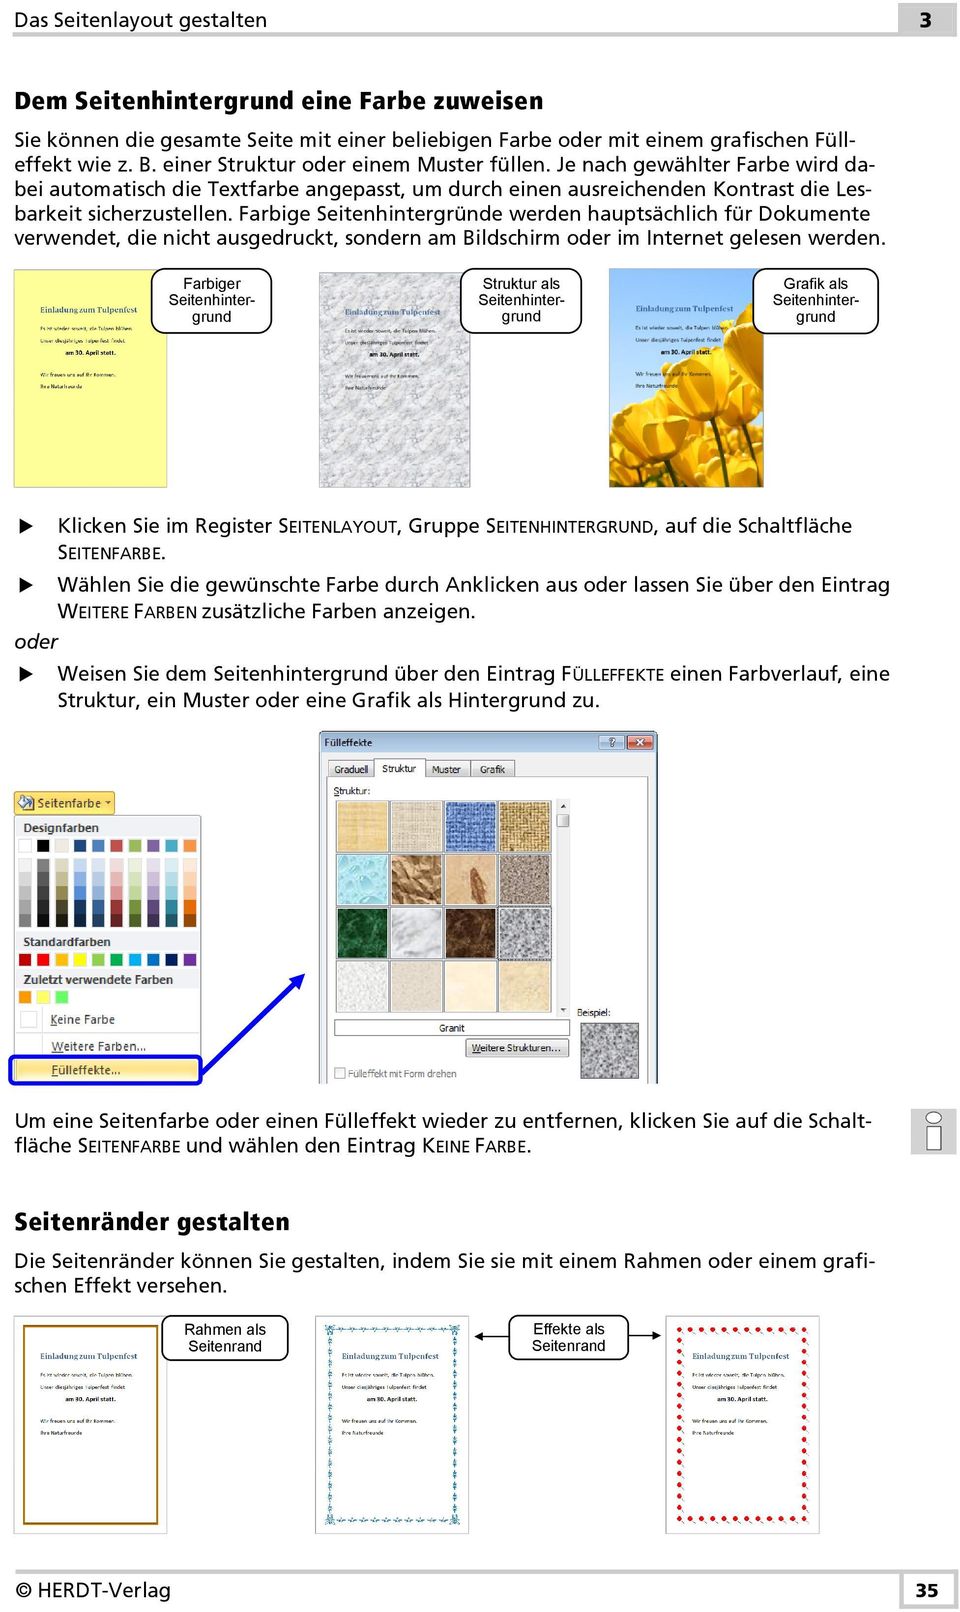 Farbige Seitenhintergründe werden hauptsächlich für Dokumente verwendet, die nicht ausgedruckt, sondern am Bildschirm im Internet gelesen werden.